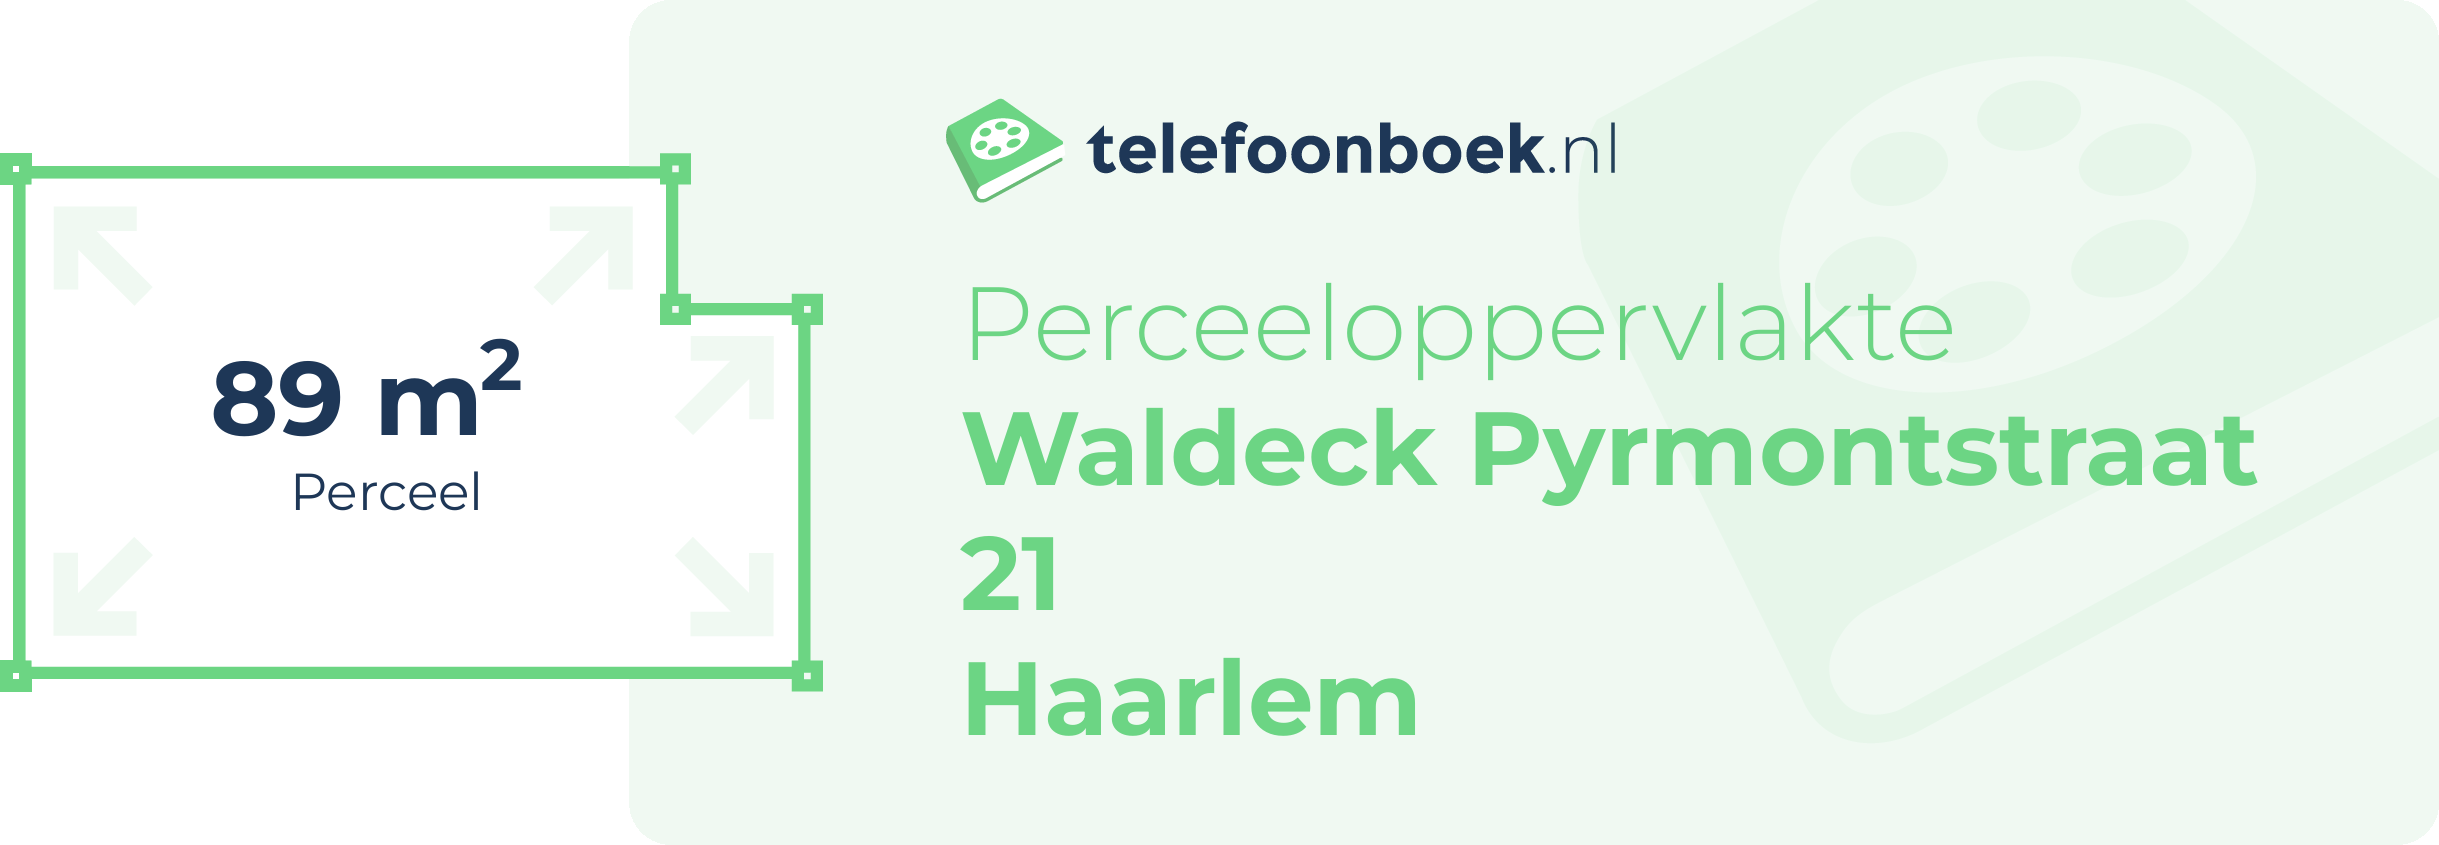 Perceeloppervlakte Waldeck Pyrmontstraat 21 Haarlem